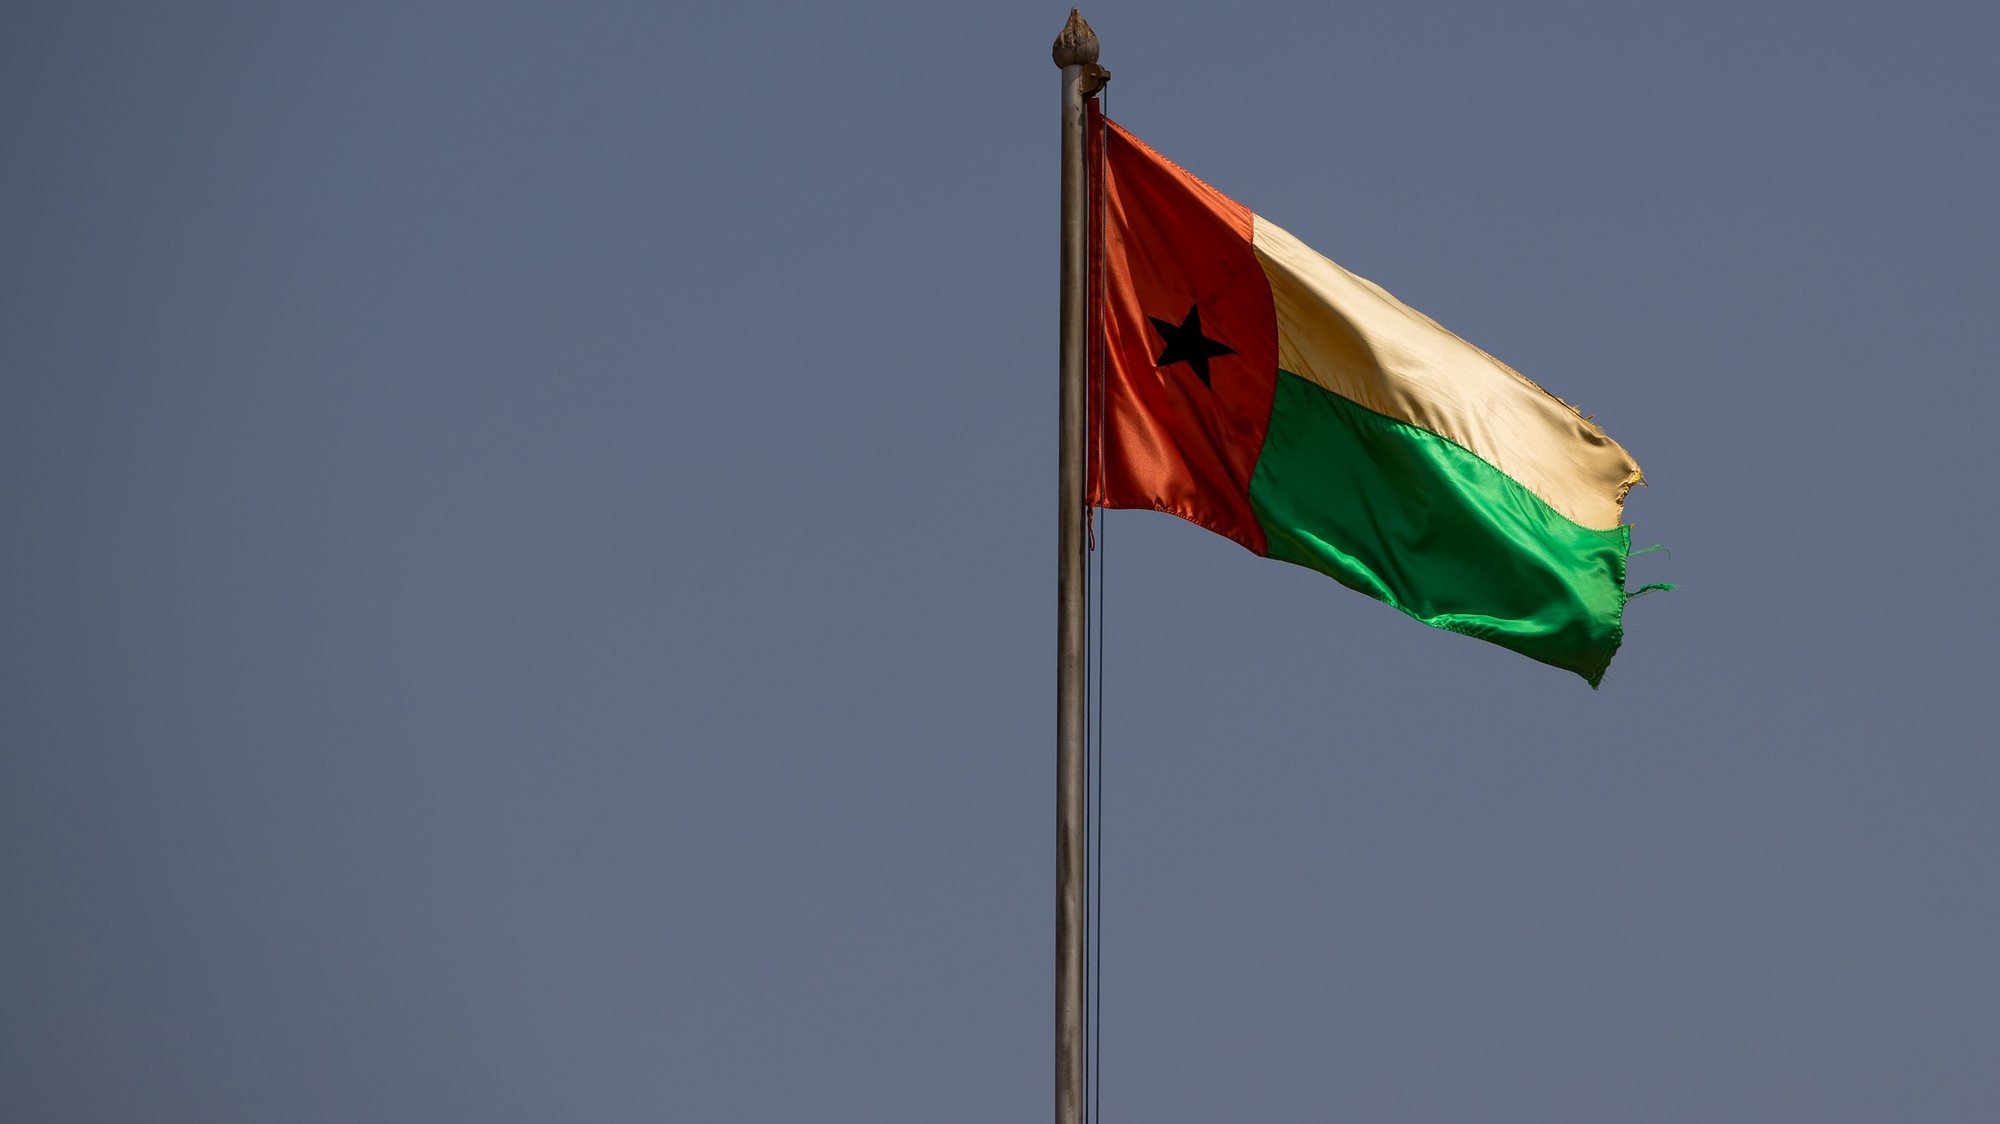 Bandeira da Guiné-Bissau, em Bissau, na Guiné-Bissau, 16 de maio de 2021. JOSÉ SENA GOULÃO/LUSA